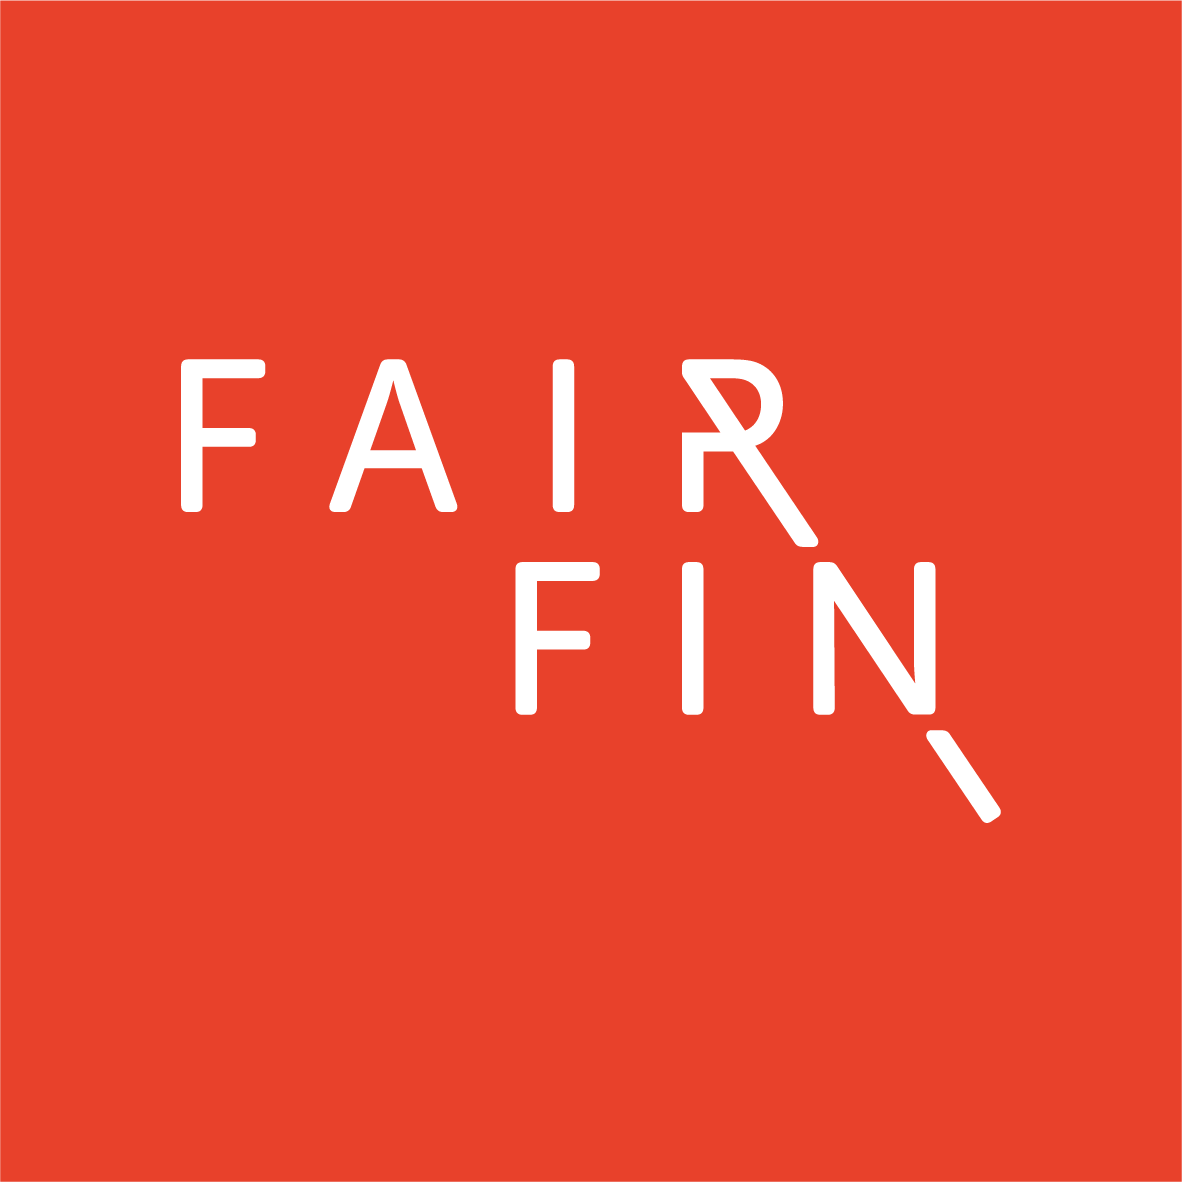 Fairfin